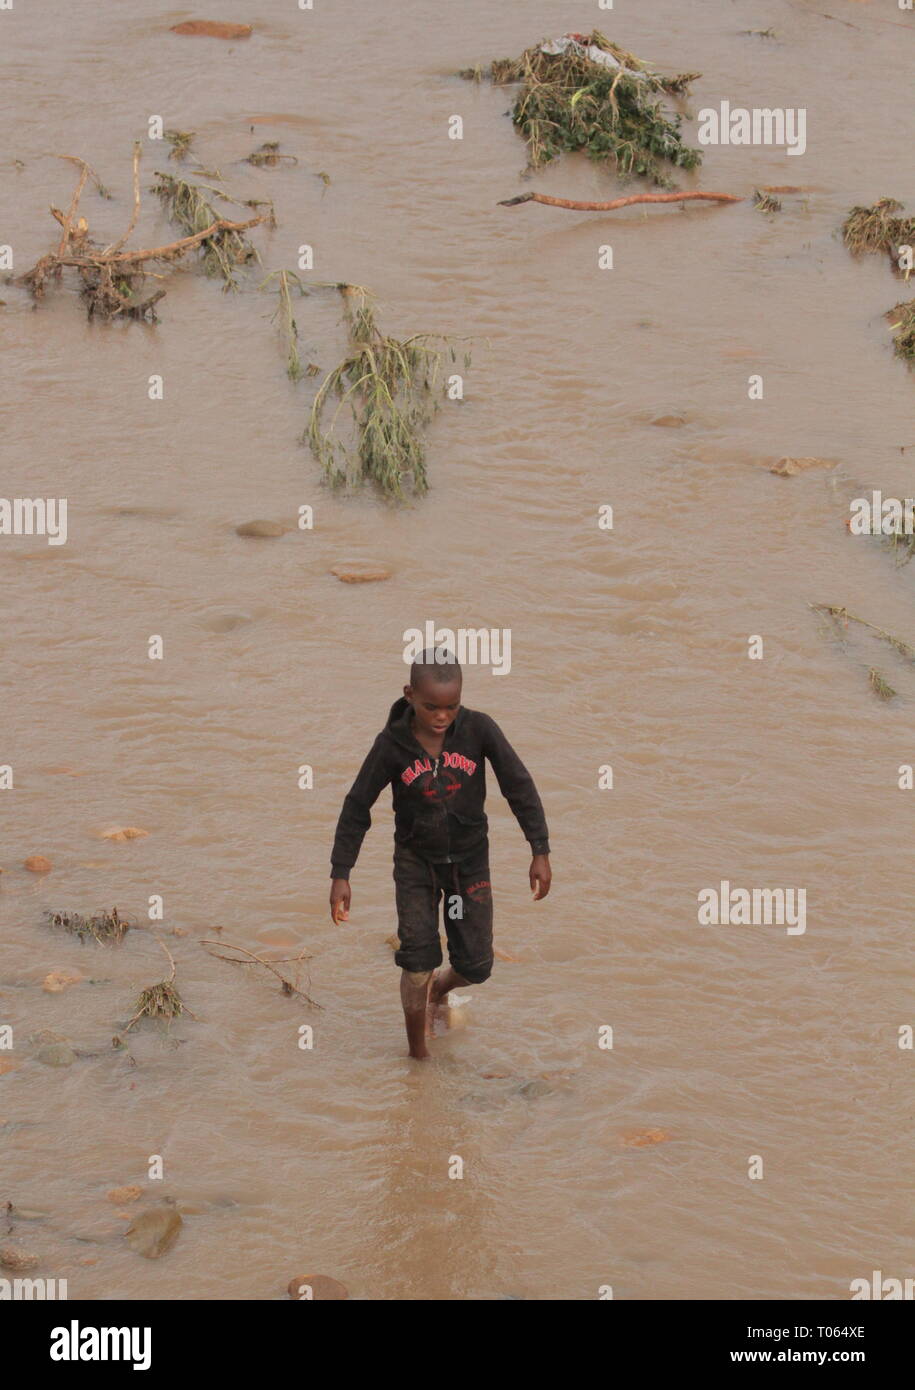 Chimanimani, Zimbabwe. Mar 17, 2019. Un garçon marche dans une rivière en crue dans la région de Chimanimani, la province de Manicaland, au Zimbabwe, le 17 mars 2019. Au moins 31 personnes ont été confirmées décédées tandis que des dizaines d'autres sont toujours portées disparues dans le cyclone tropical Idai fait des ravages dans le sud-est du Zimbabwe, le gouvernement a déclaré samedi soir. Credit : Shaun Jusa/Xinhua/Alamy Live News Banque D'Images